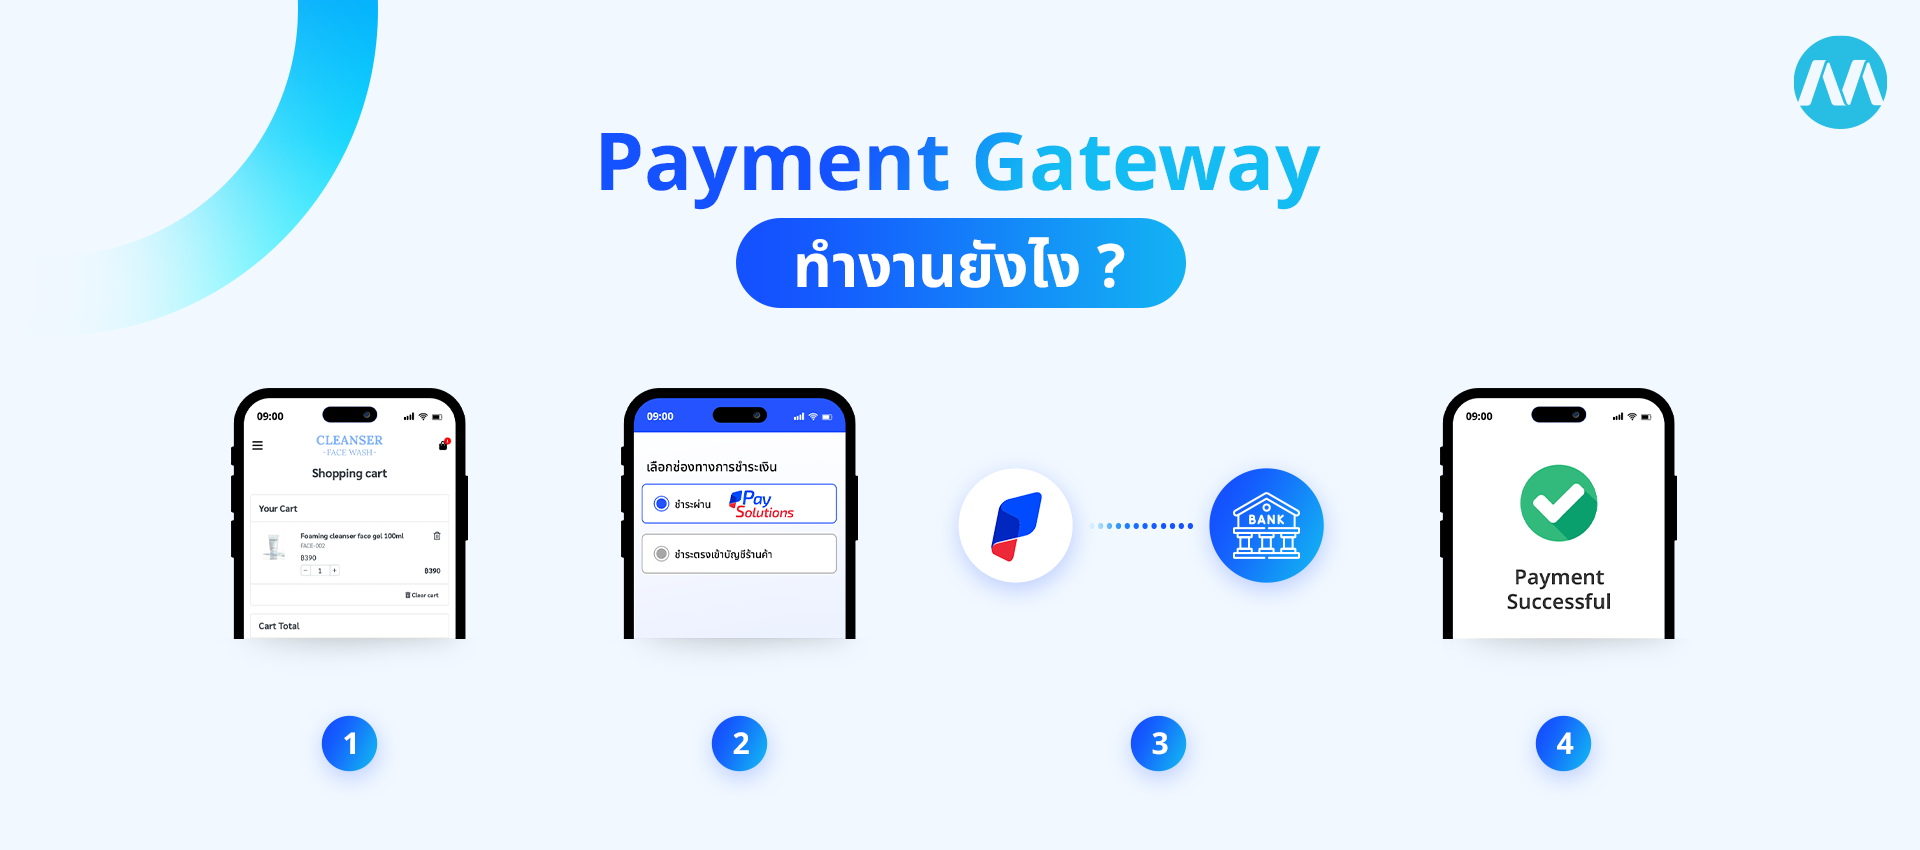 การทำงานของ Payment Gateway 